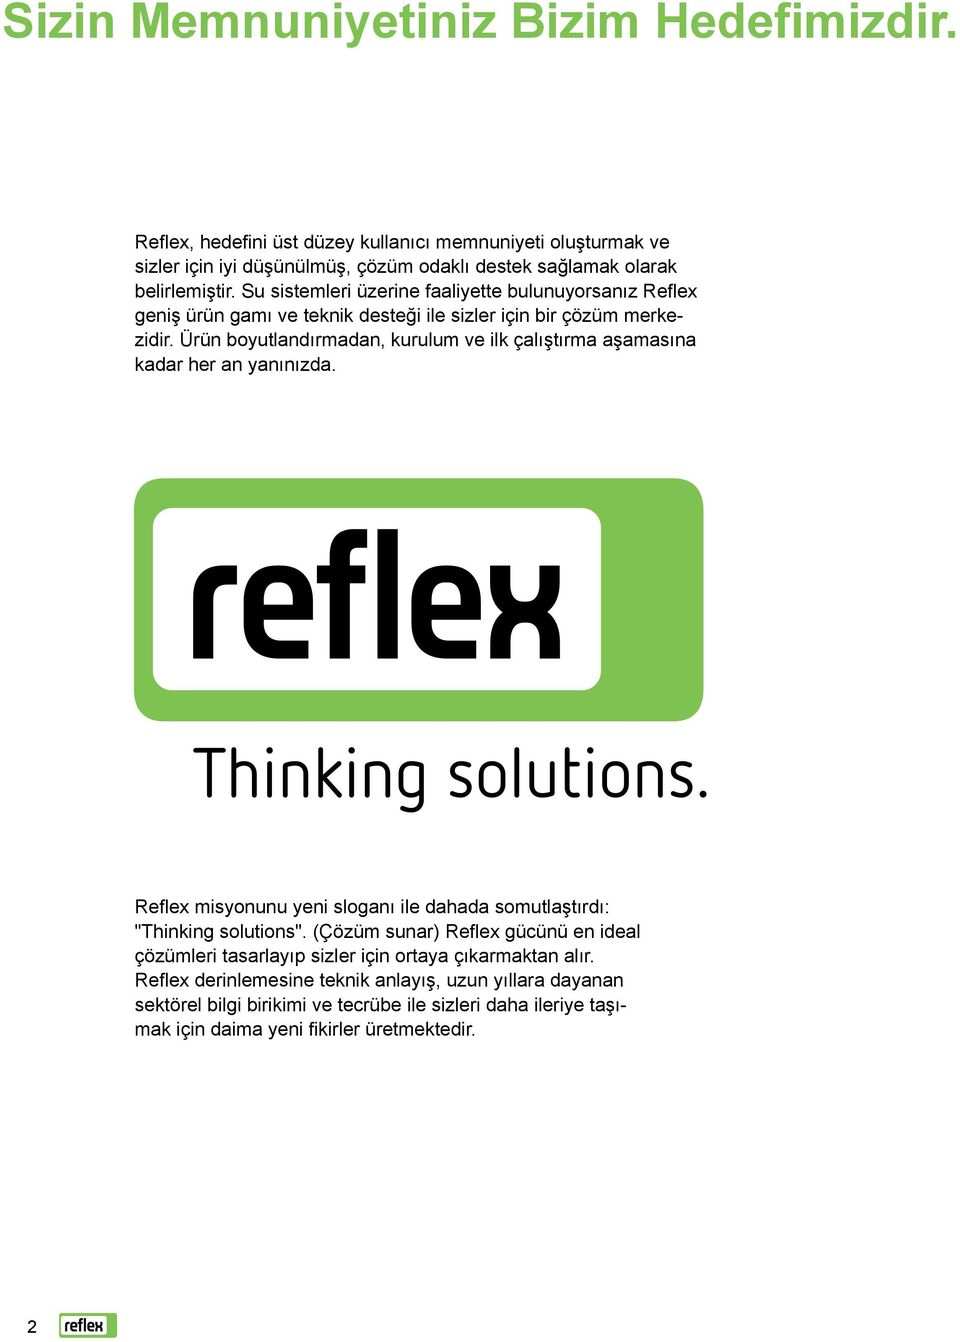 Ürün boyutlandırmadan, kurulum ve ilk çalıştırma aşamasına kadar her an yanınızda. Reflex misyonunu yeni sloganı ile dahada somutlaştırdı: "Thinking solutions".